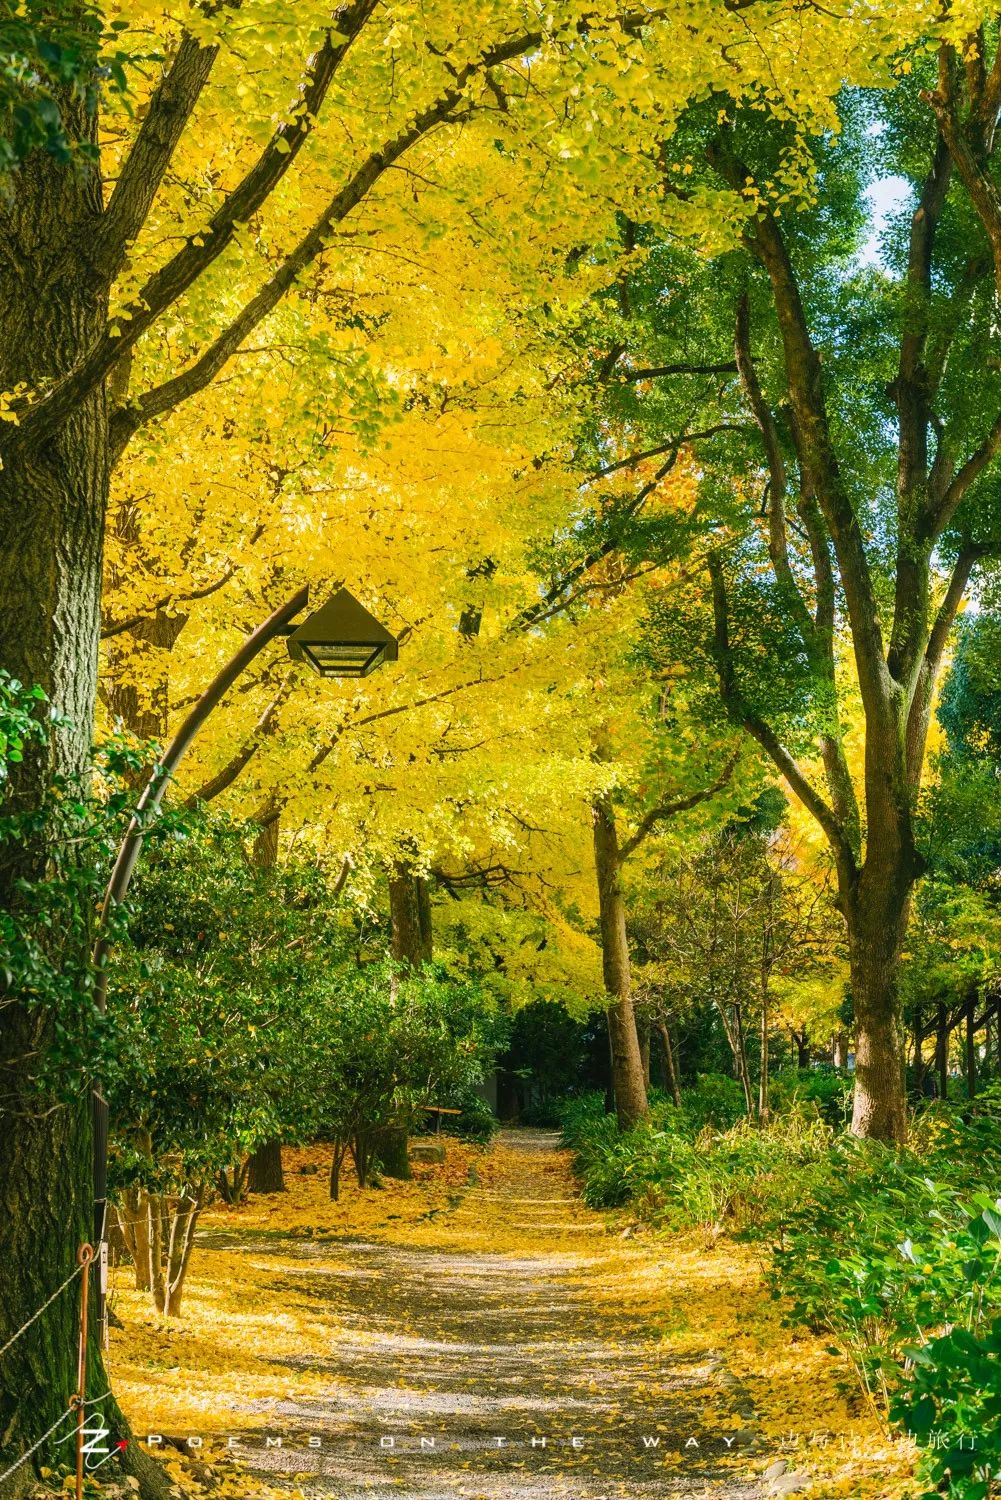 日比谷公園 東京秋色一隅 一邊寫詩一邊旅行 微文庫